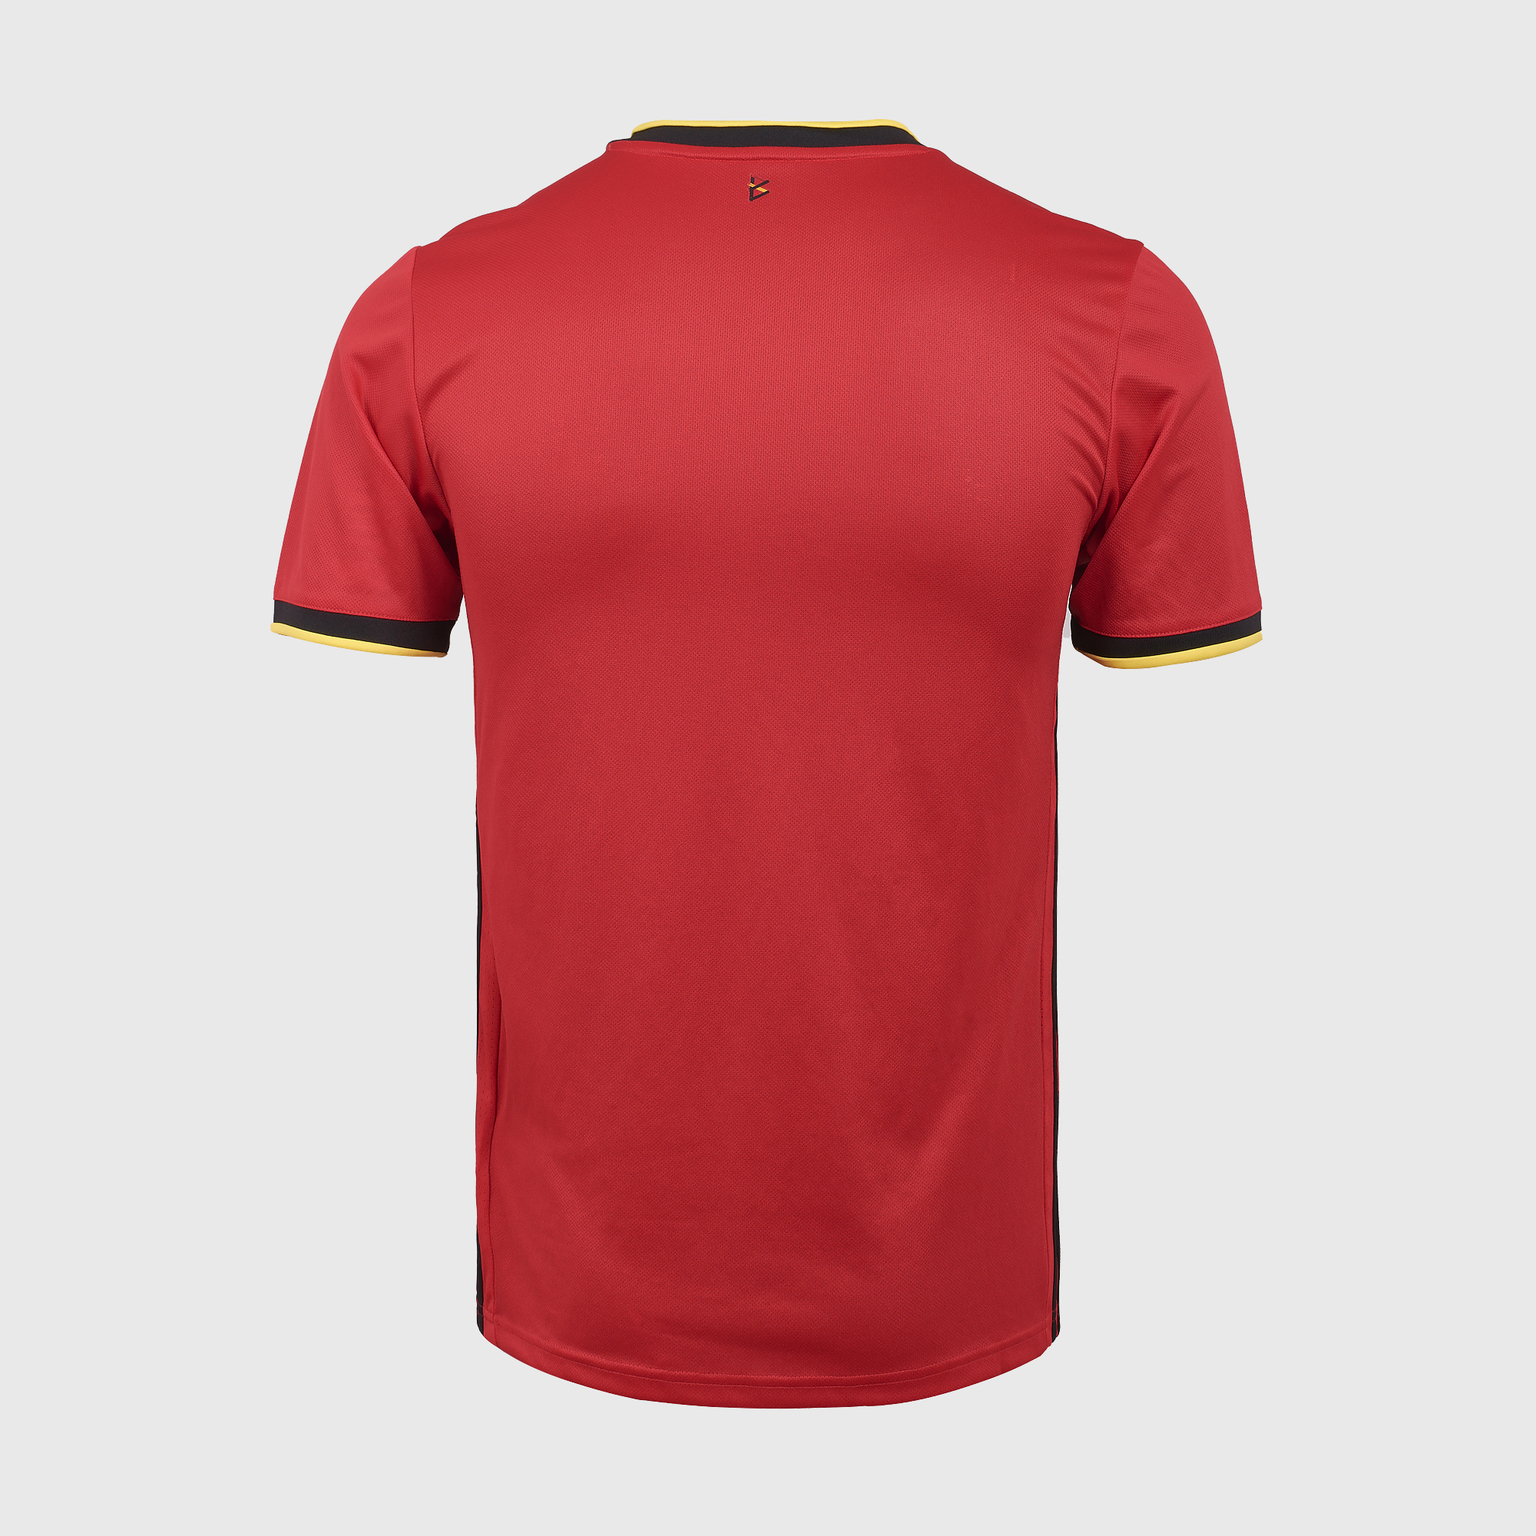 Футболка игровая домашняя Adidas сборной Бельгии сезон 2020/21